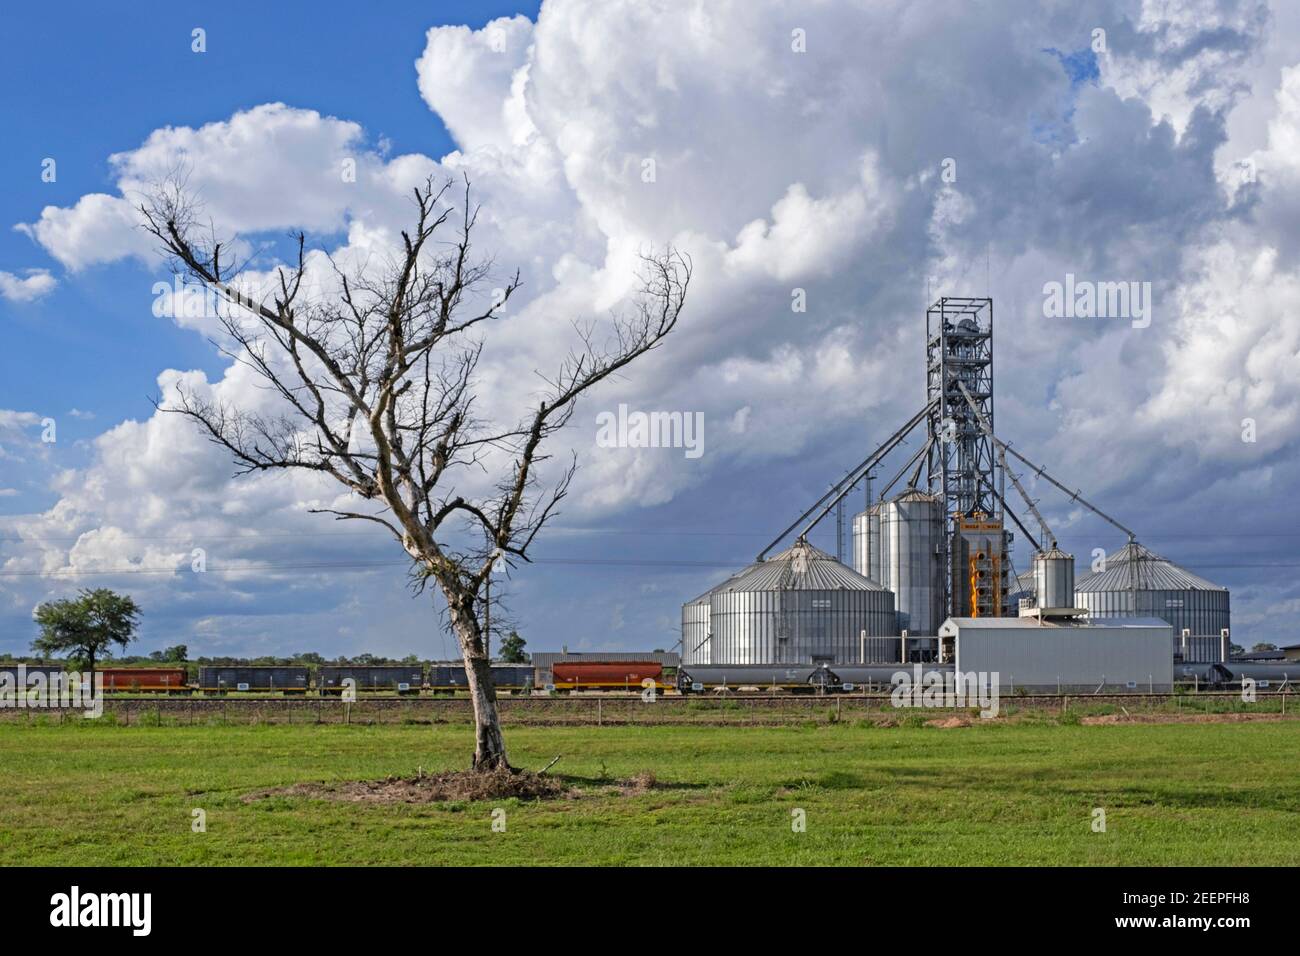 Güterzug verladen Getreide in Güterwagen / Güterwagen an landwirtschaftlichen Silos entlang National Route 16, Autobahn in der Provinz Chaco, Argentinien Stockfoto